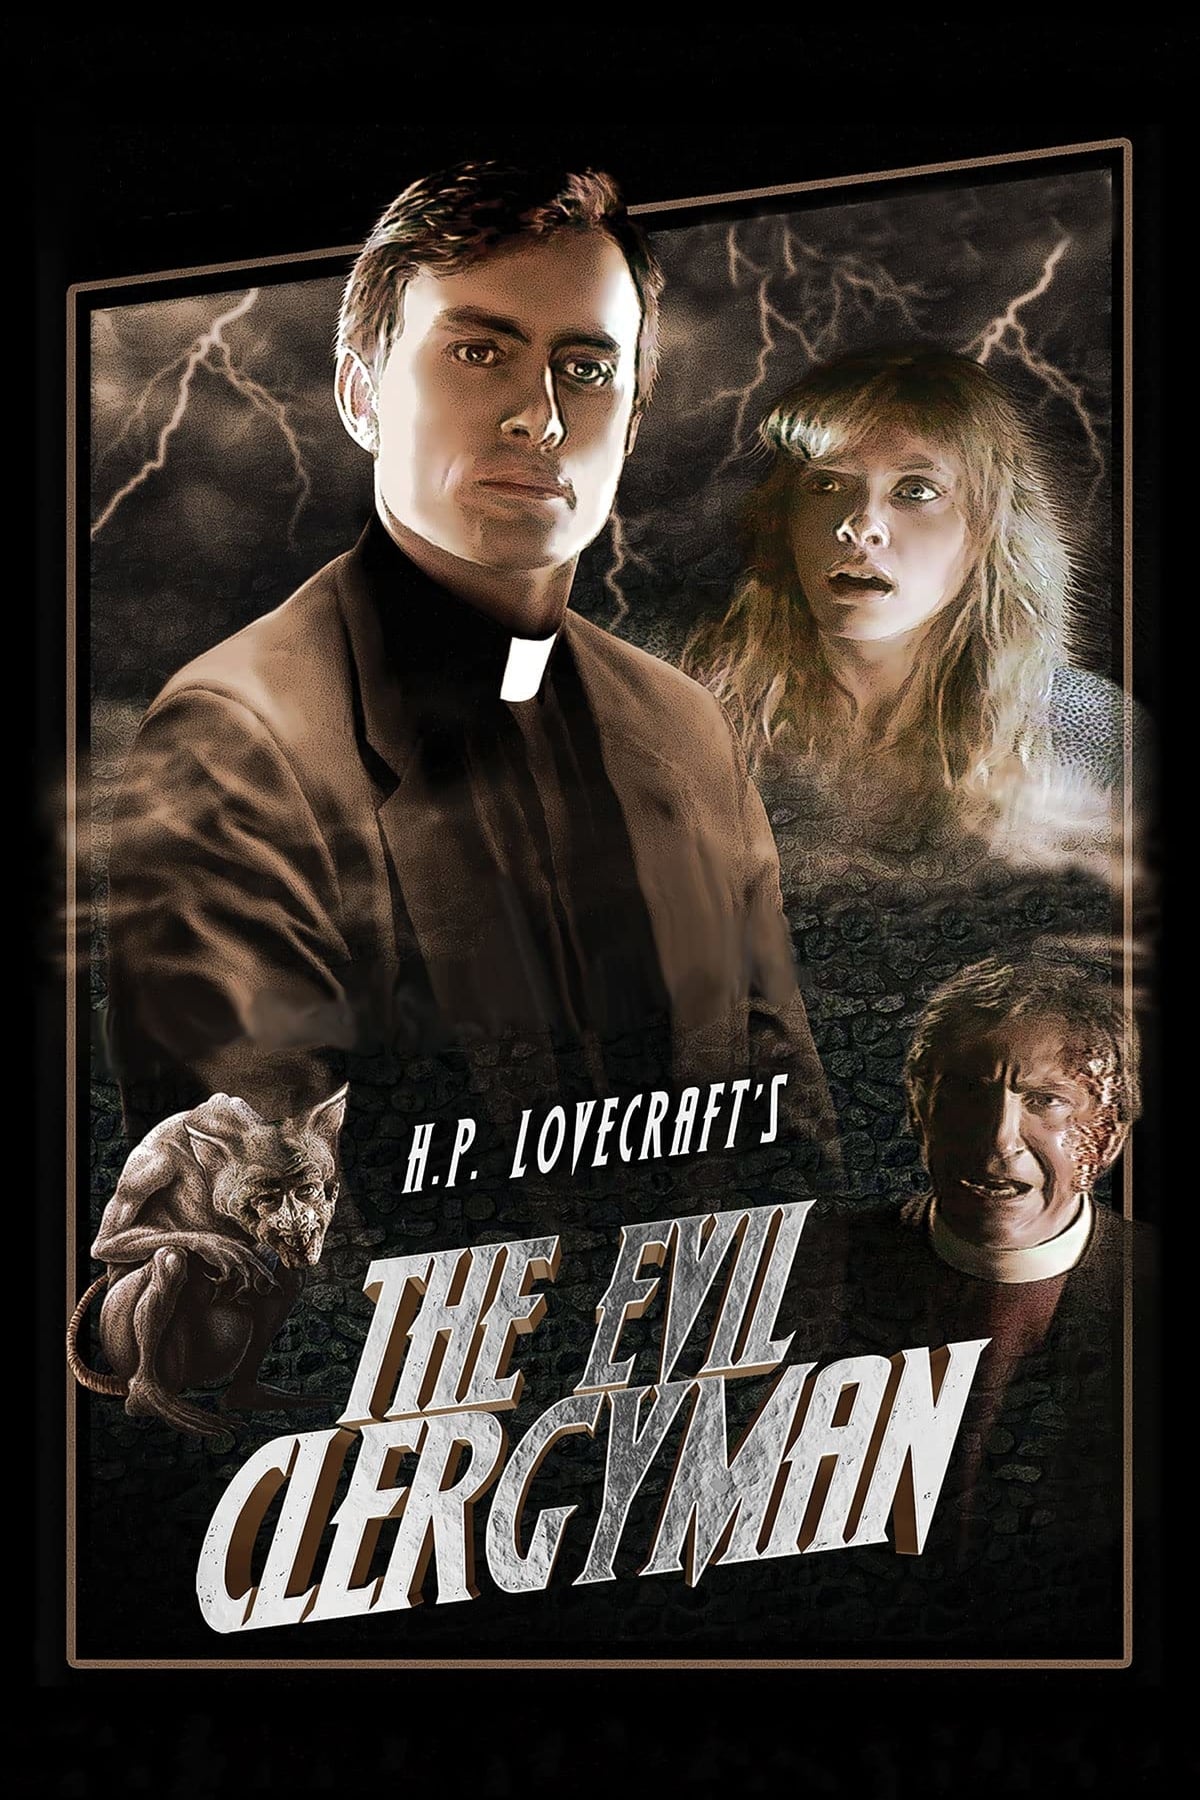 The Evil Clergyman (1988)